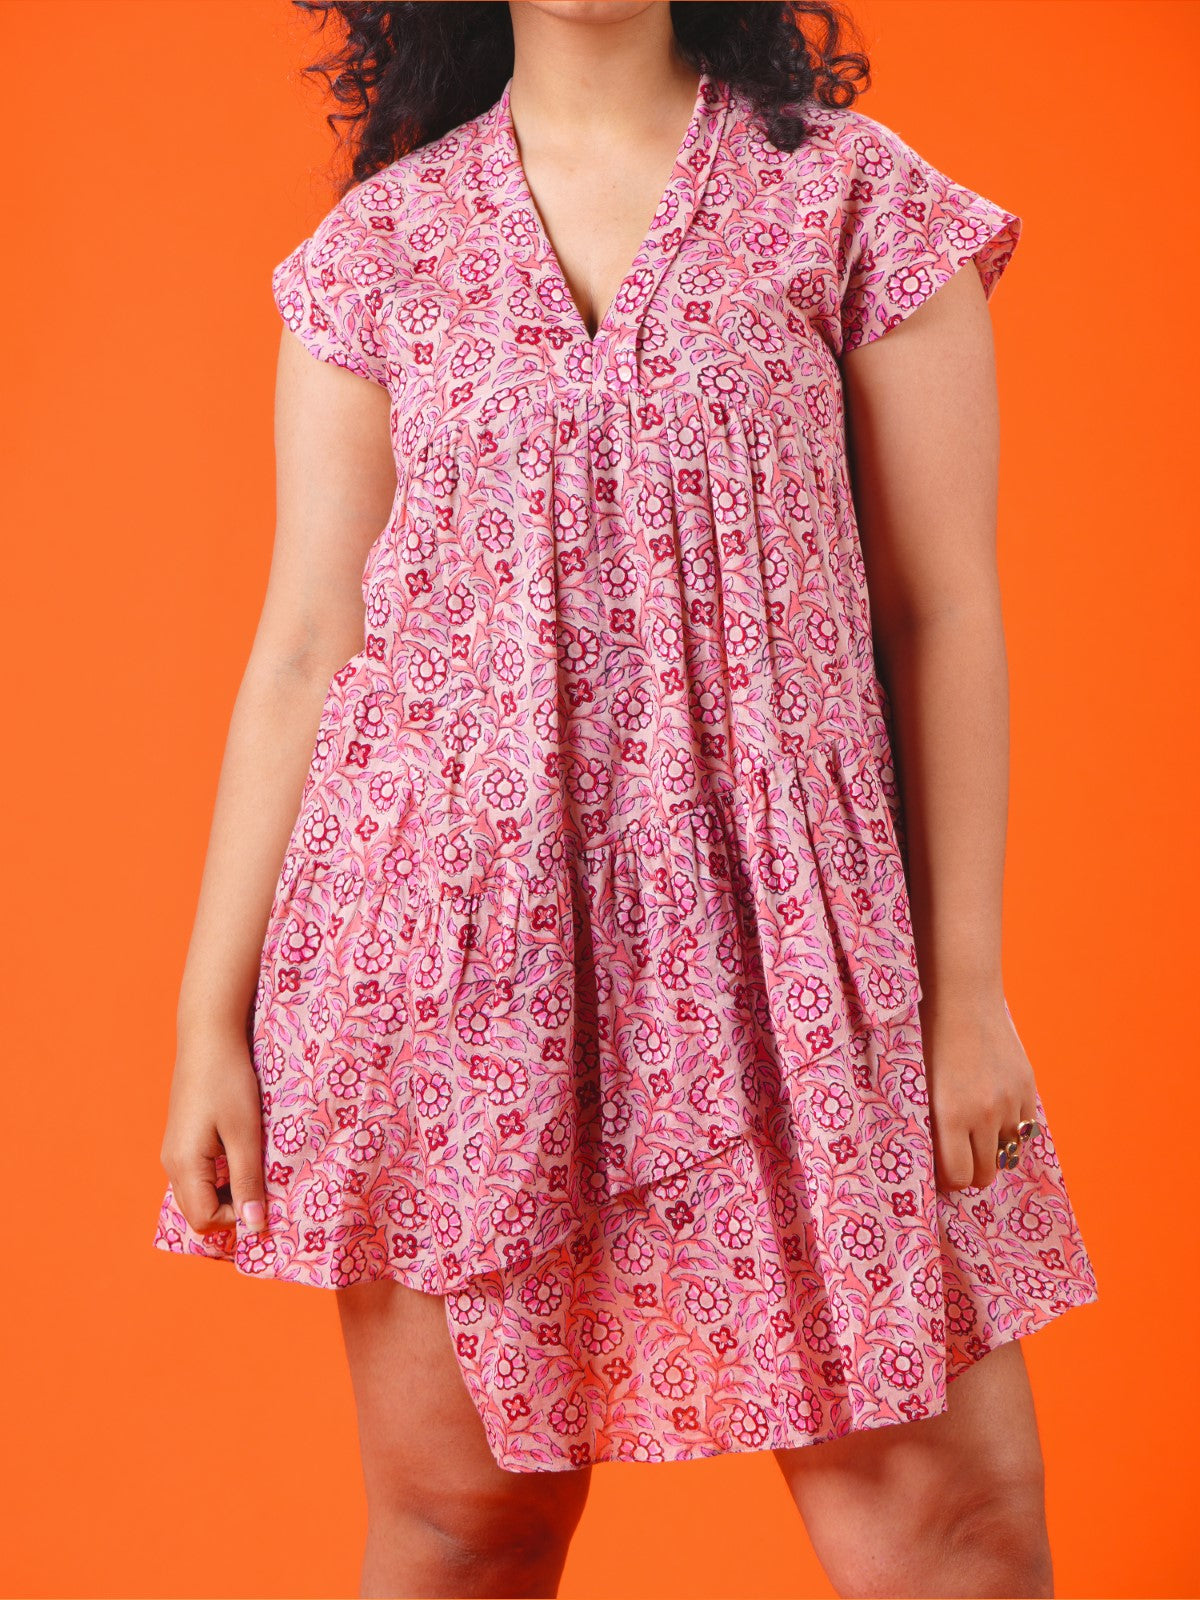 Peach garden short dress